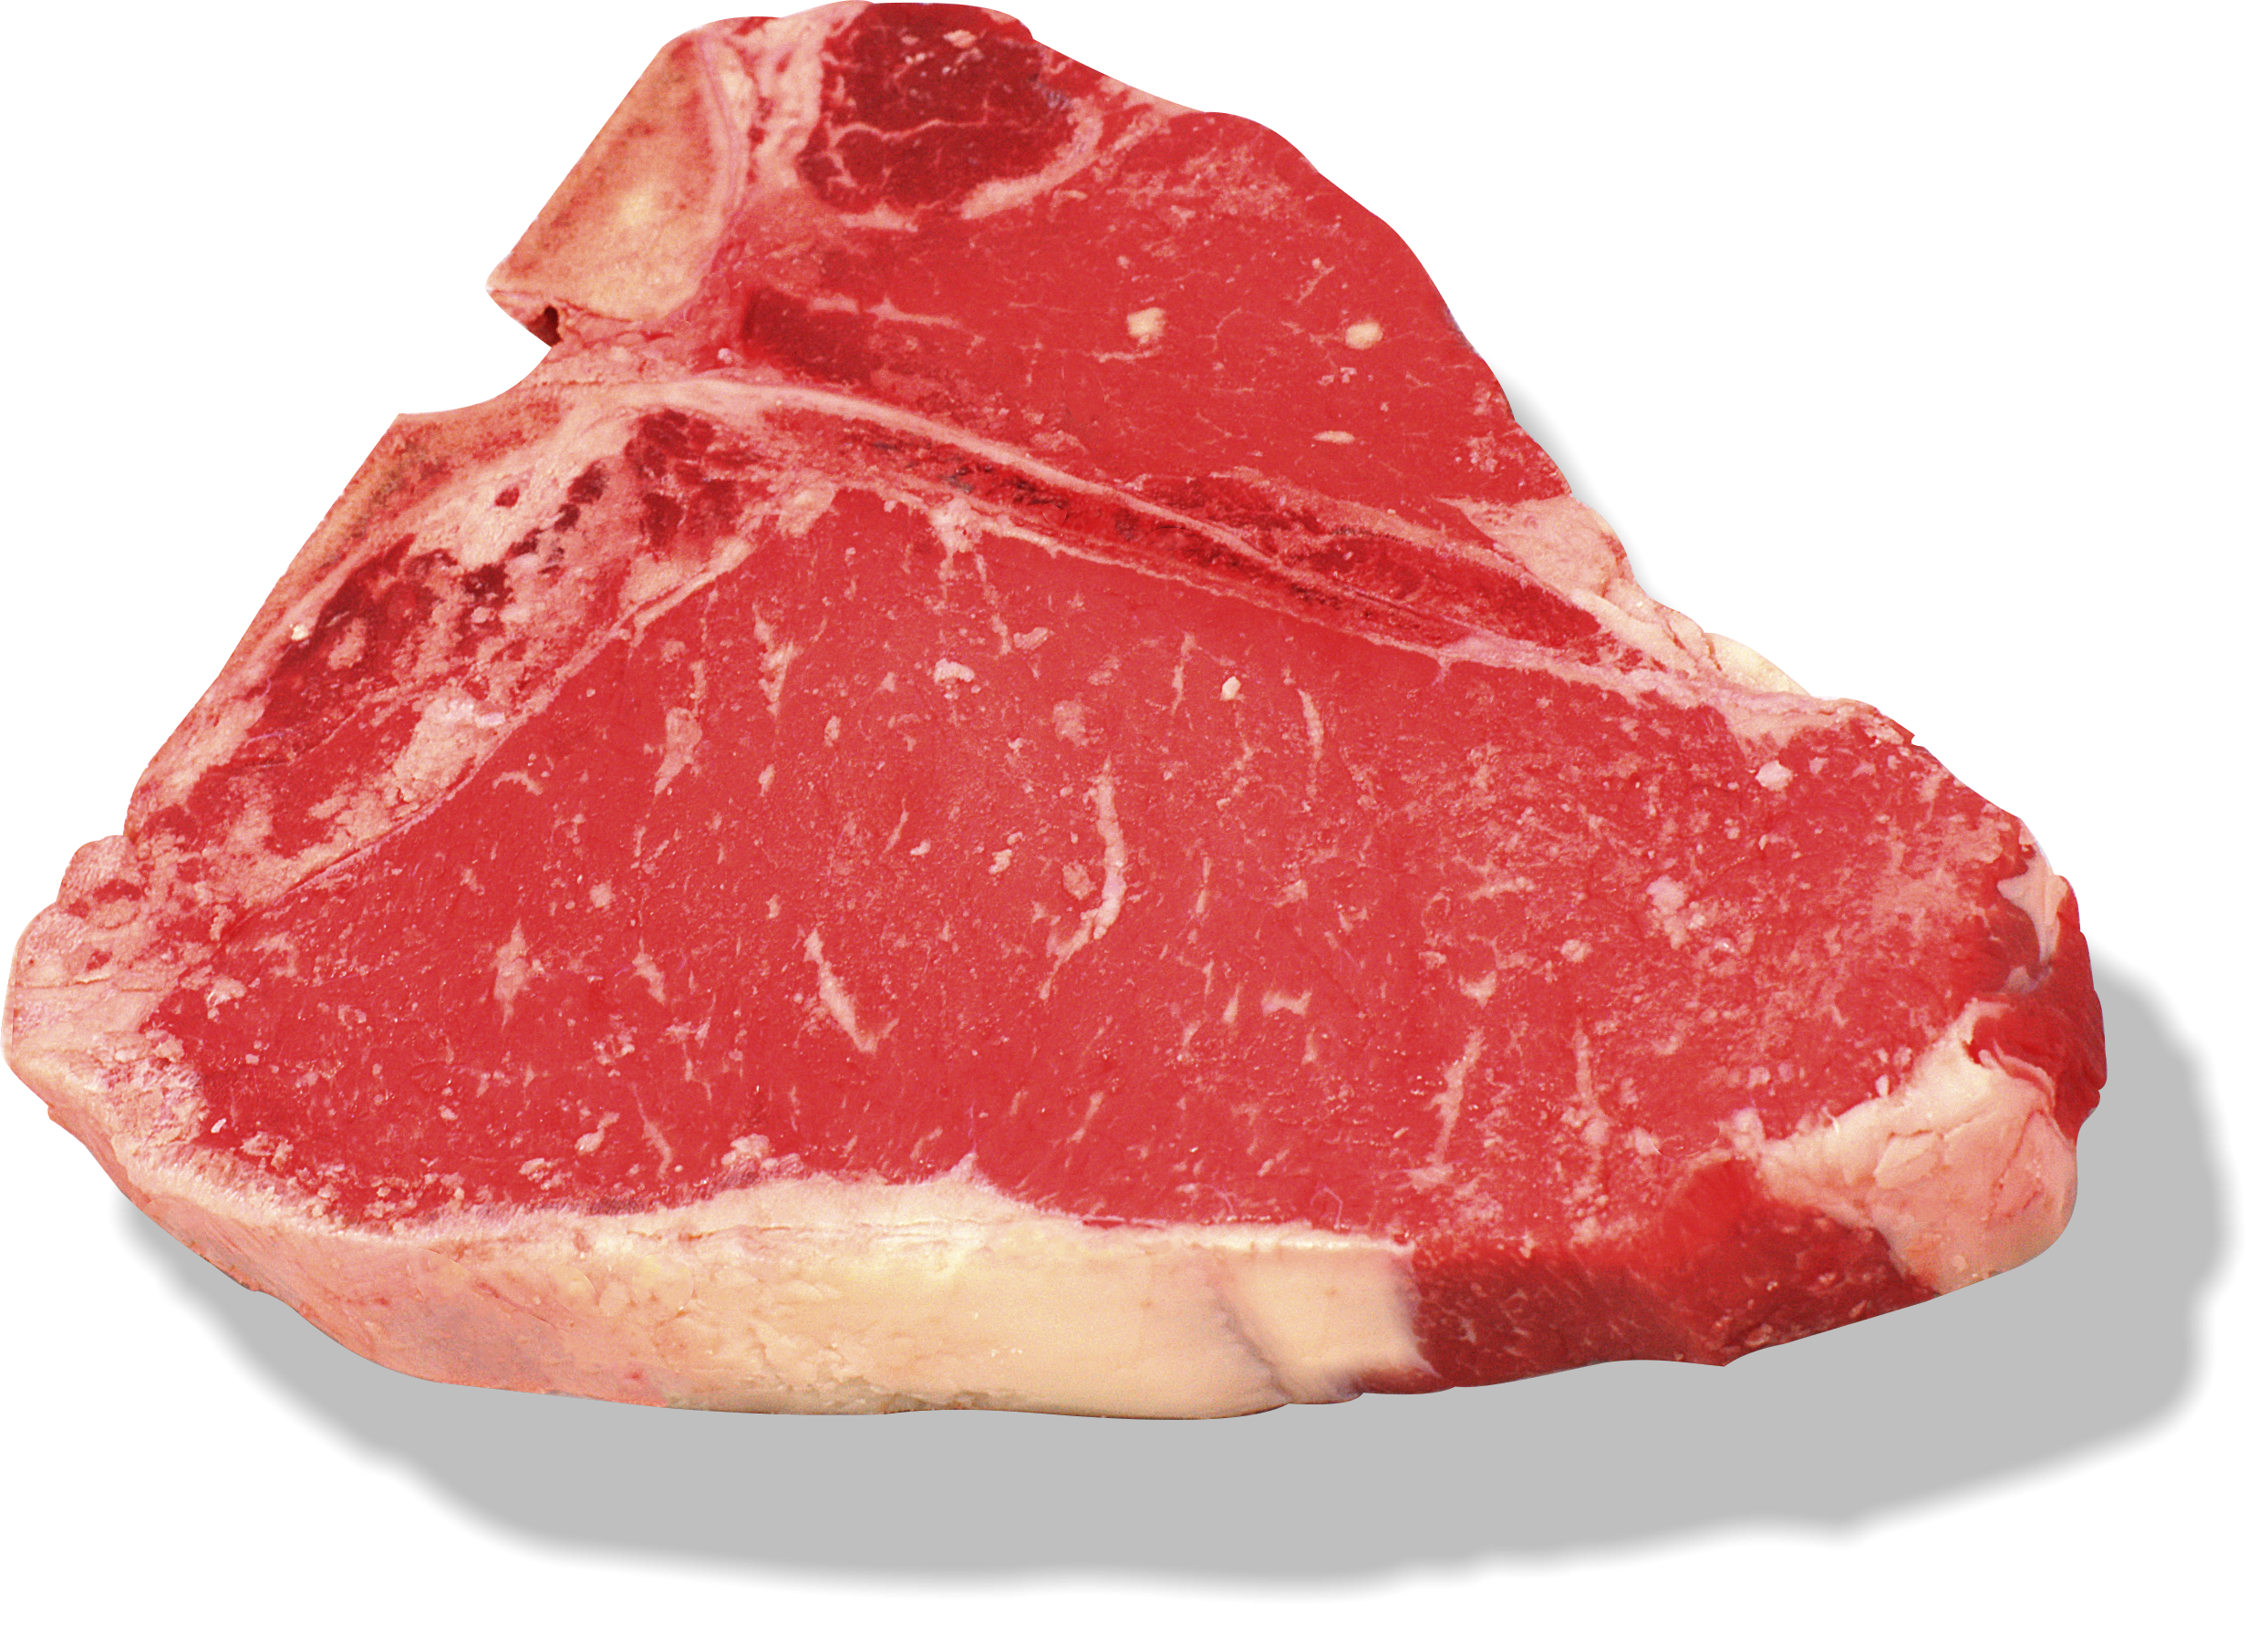 Free photo: Raw steak - Food, Raw, Red - Free Download - Jooinn